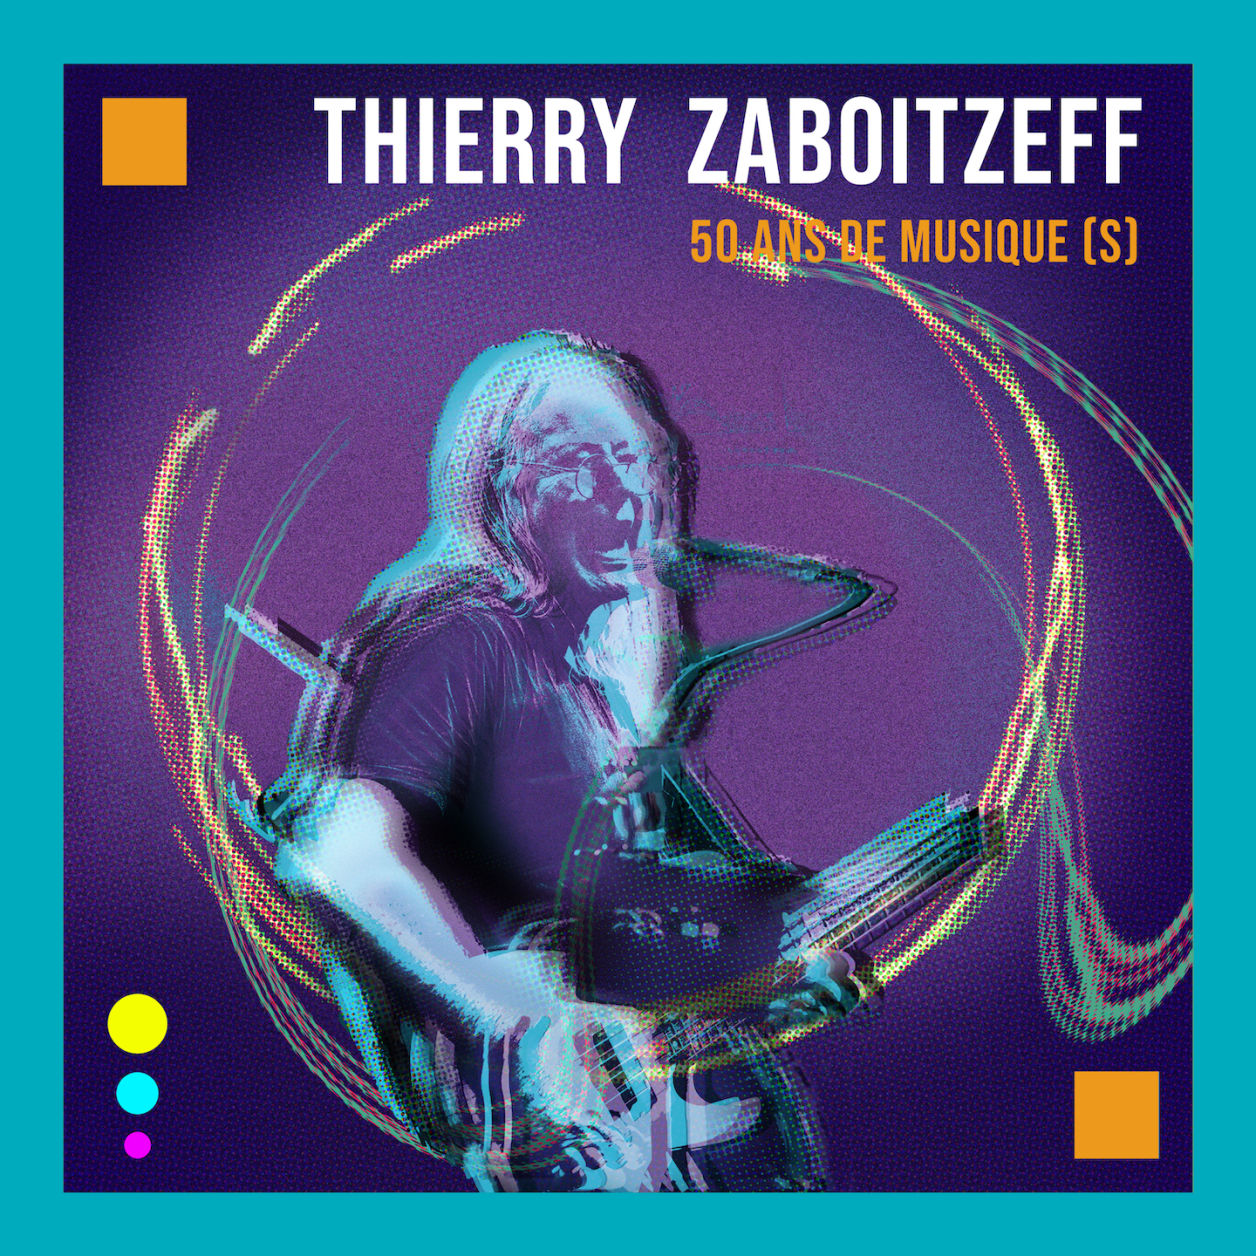 Thierry Zaboitzeff - 50 ans de musique (s)